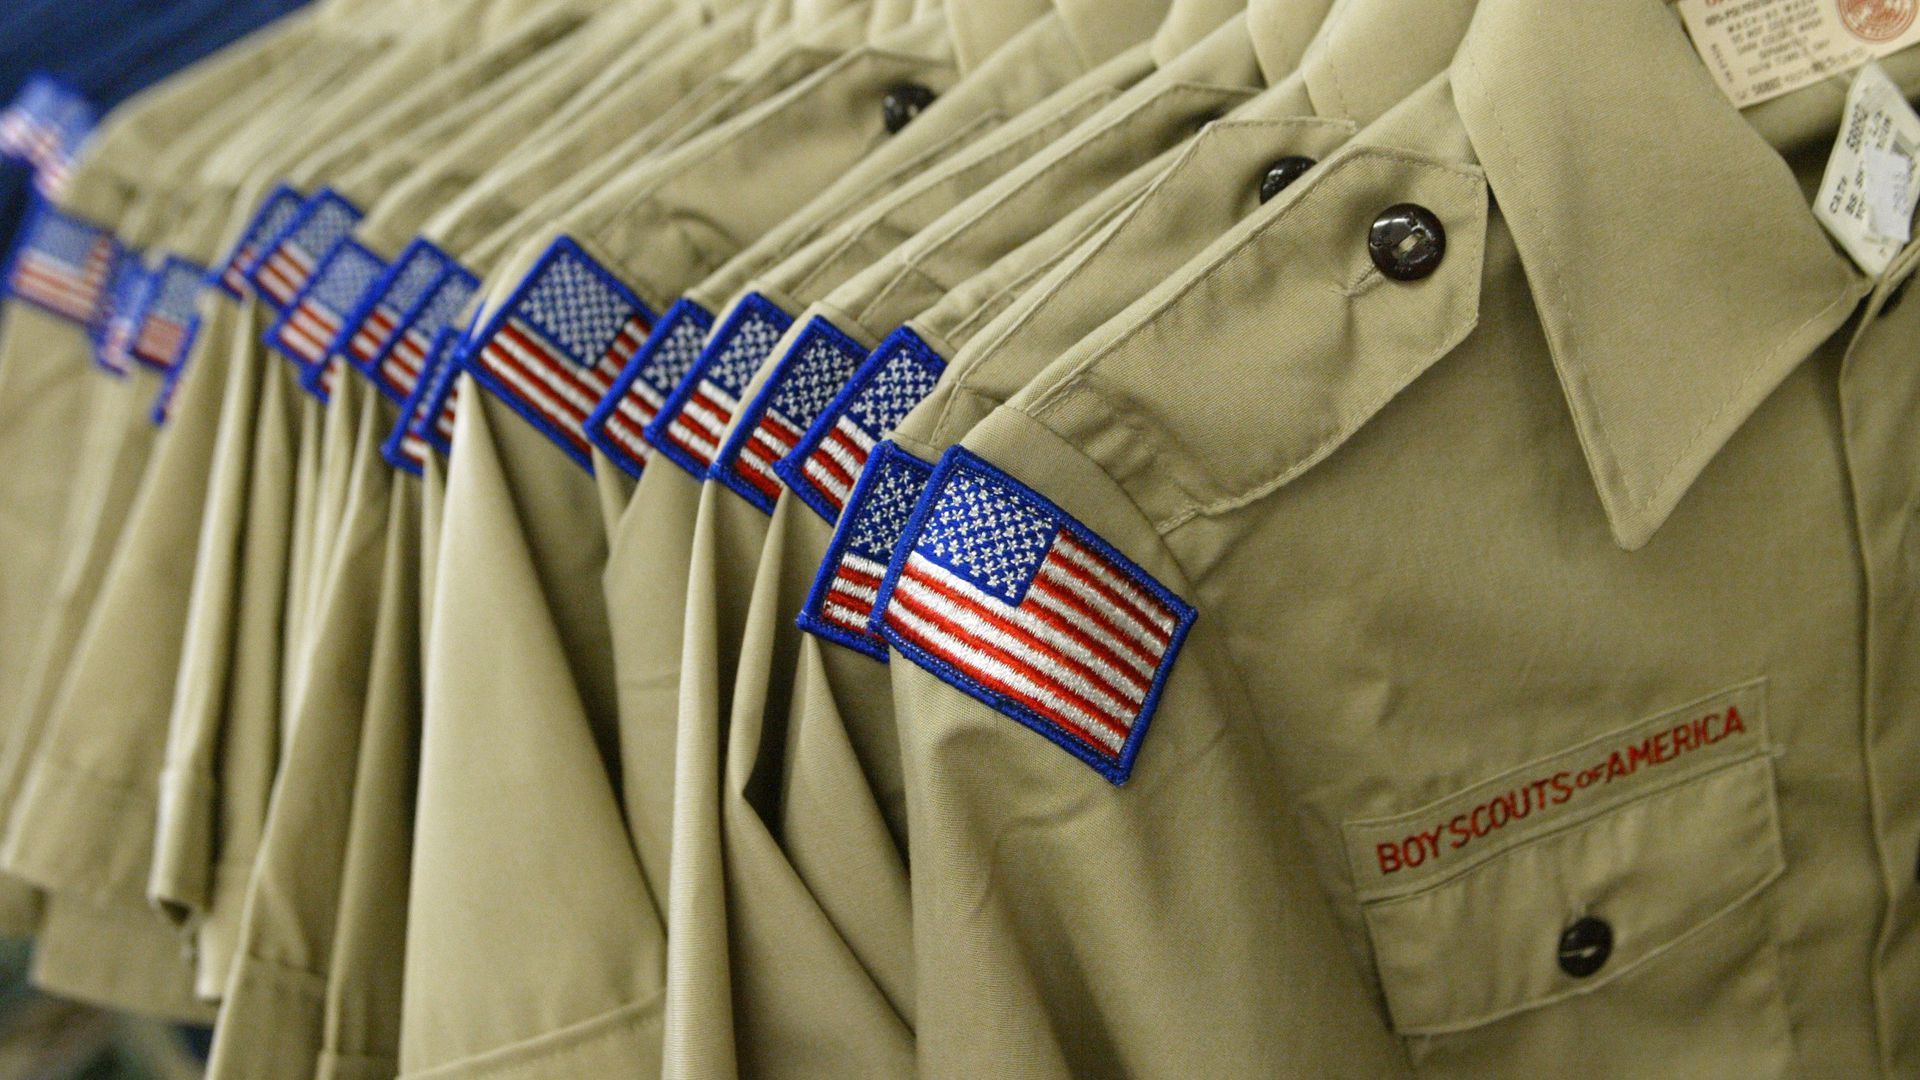 Boy Scouts uniforms